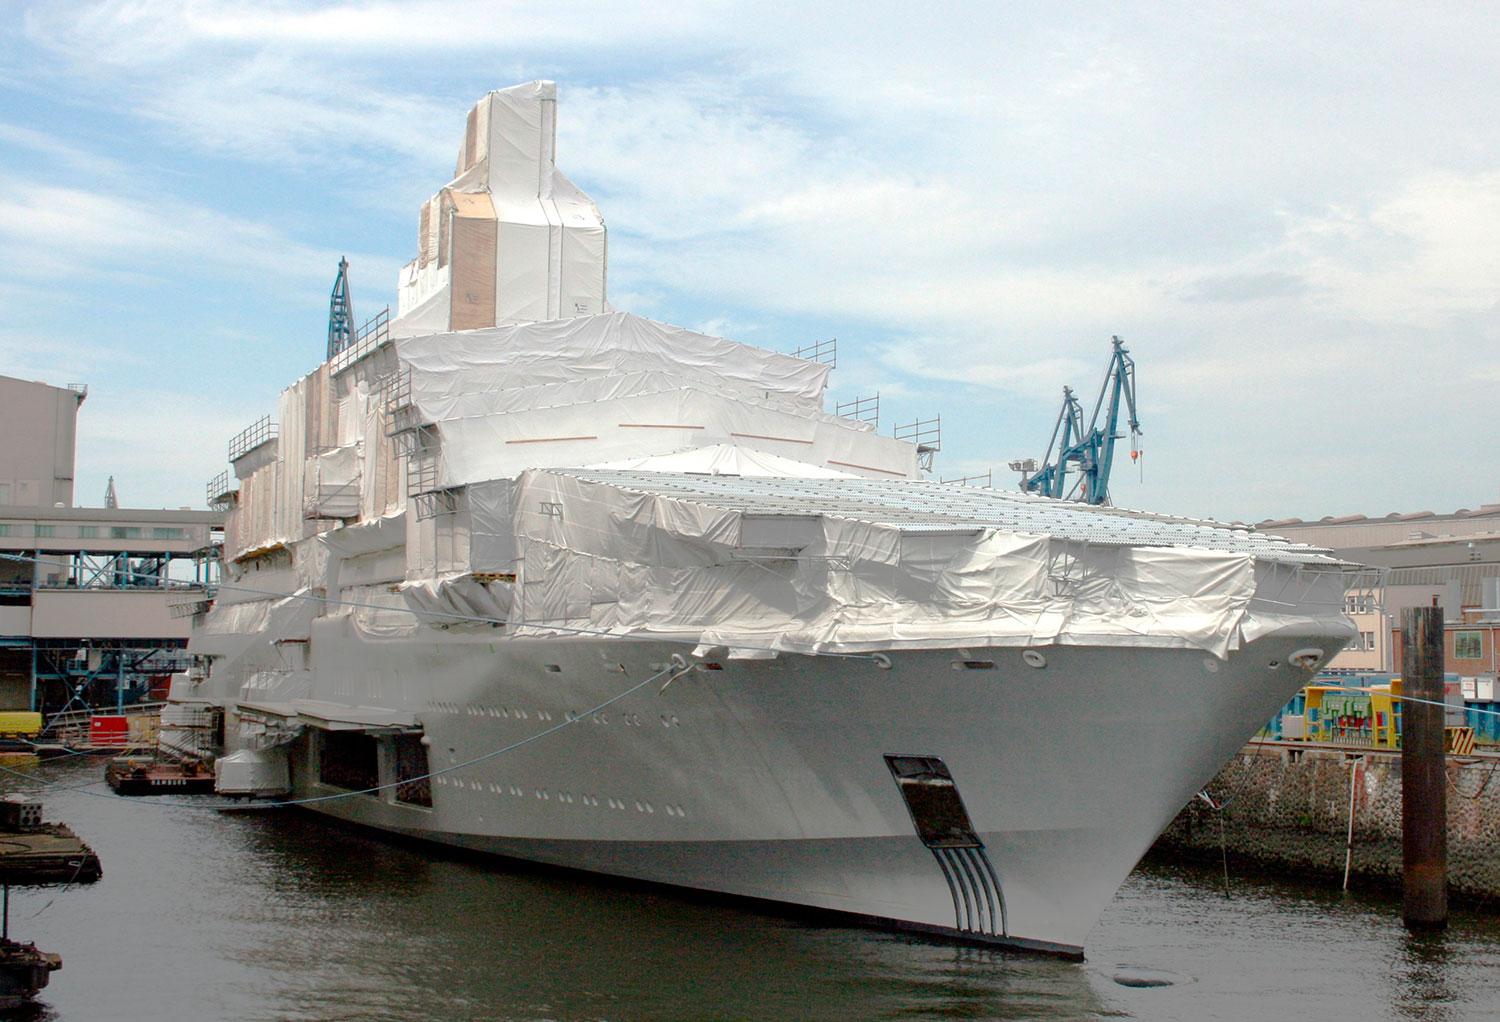 Eclipse byggdes av varvet Blohm + Voss i Hamburg där hon sjösattes 2009.